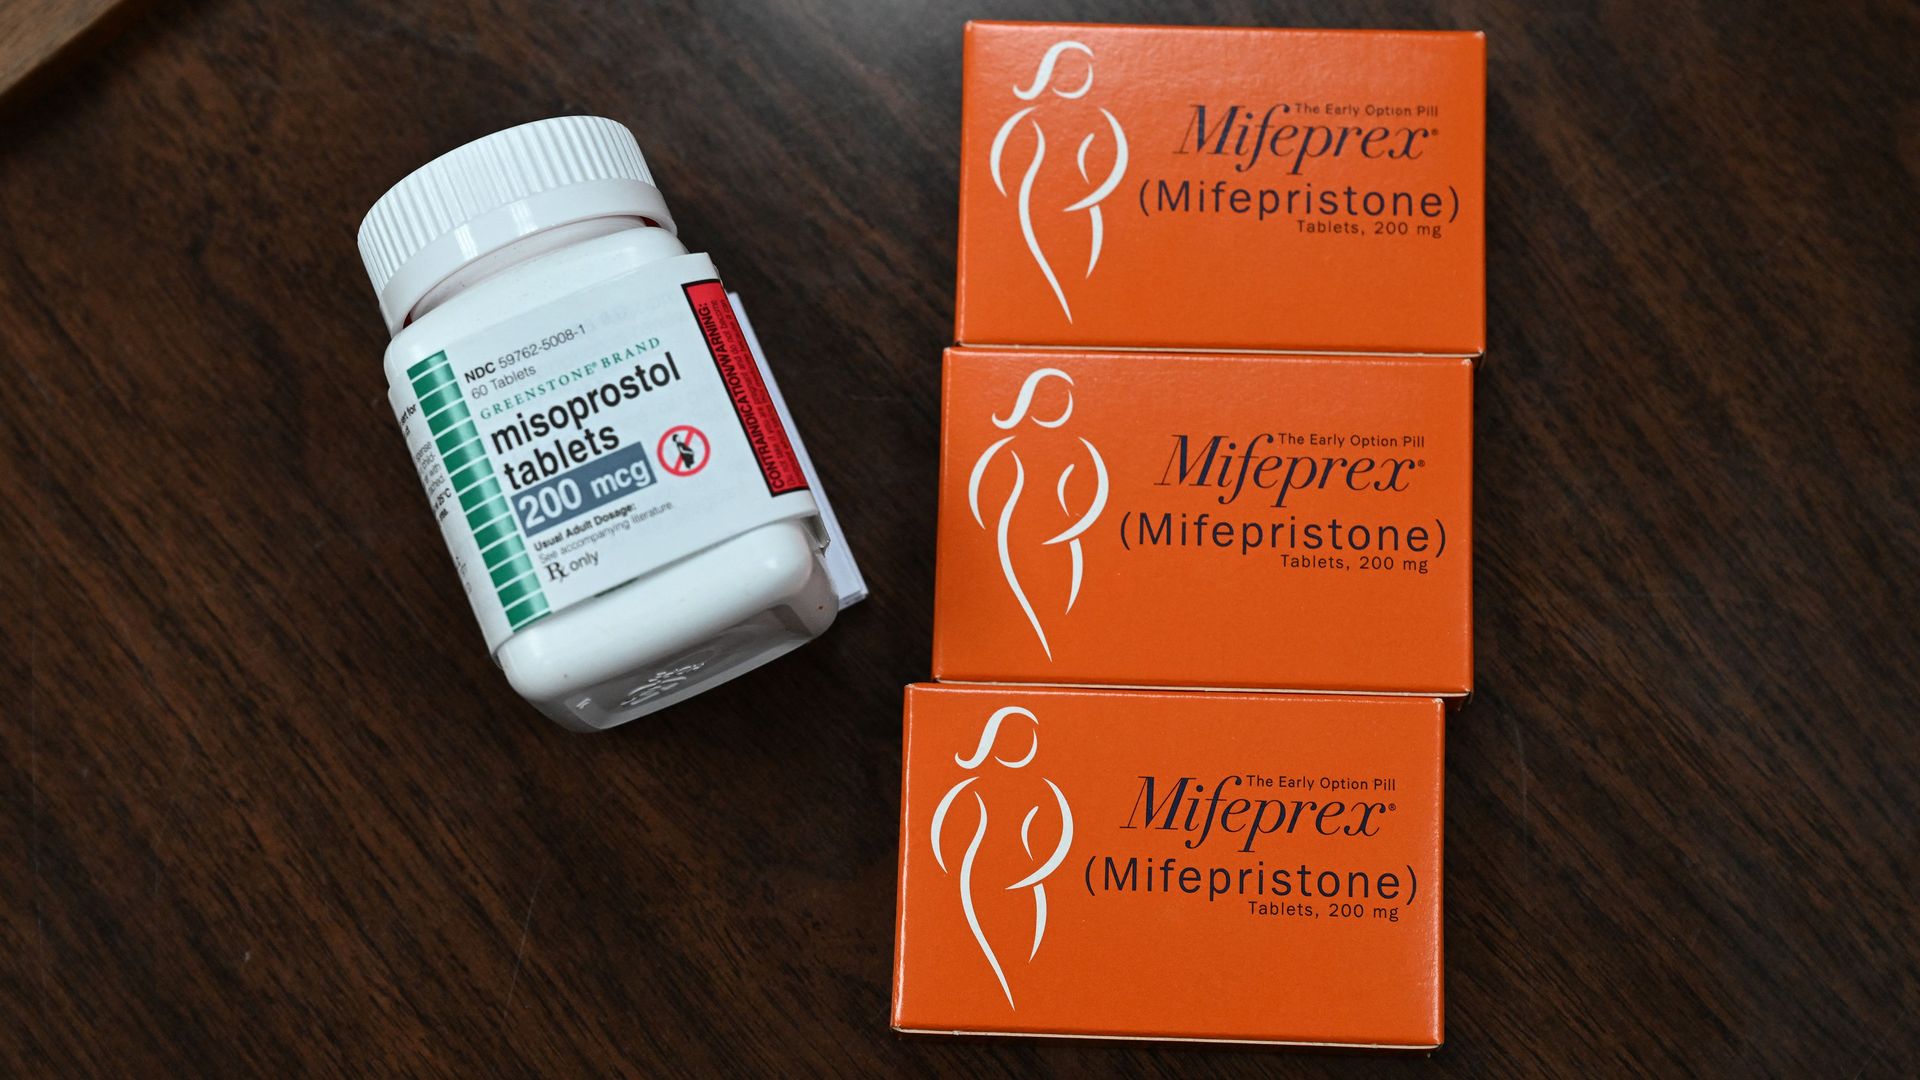 Picture of three orange boxes of mifepristone